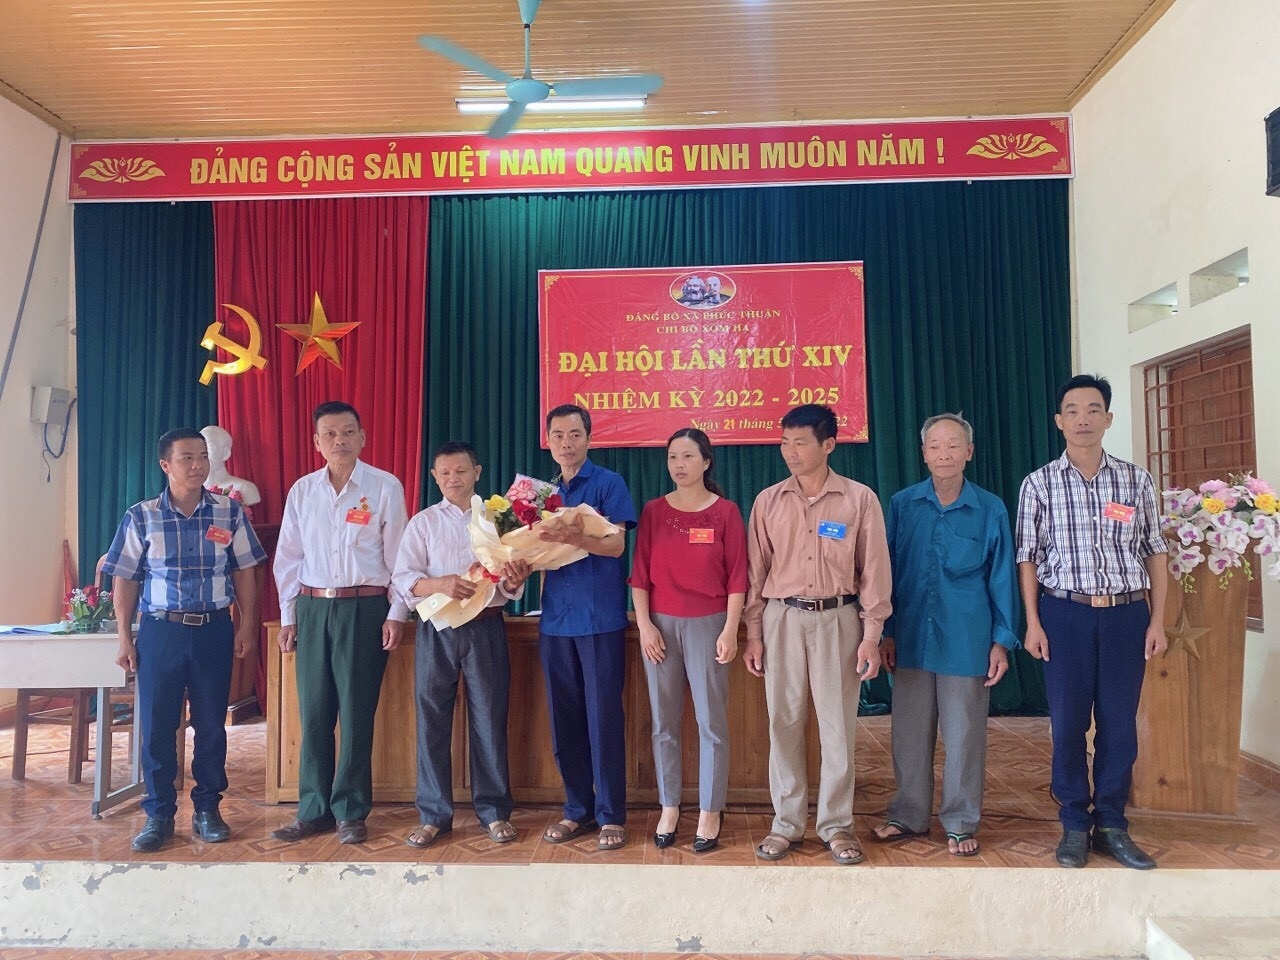 Ông Nguyễn Văn Bẩy (thứ ba từ phải qua trái) là cầu nối đưa các chính sách, pháp luật của Đảng, Nhà nước đến với đồng bào dân tộc thiểu số